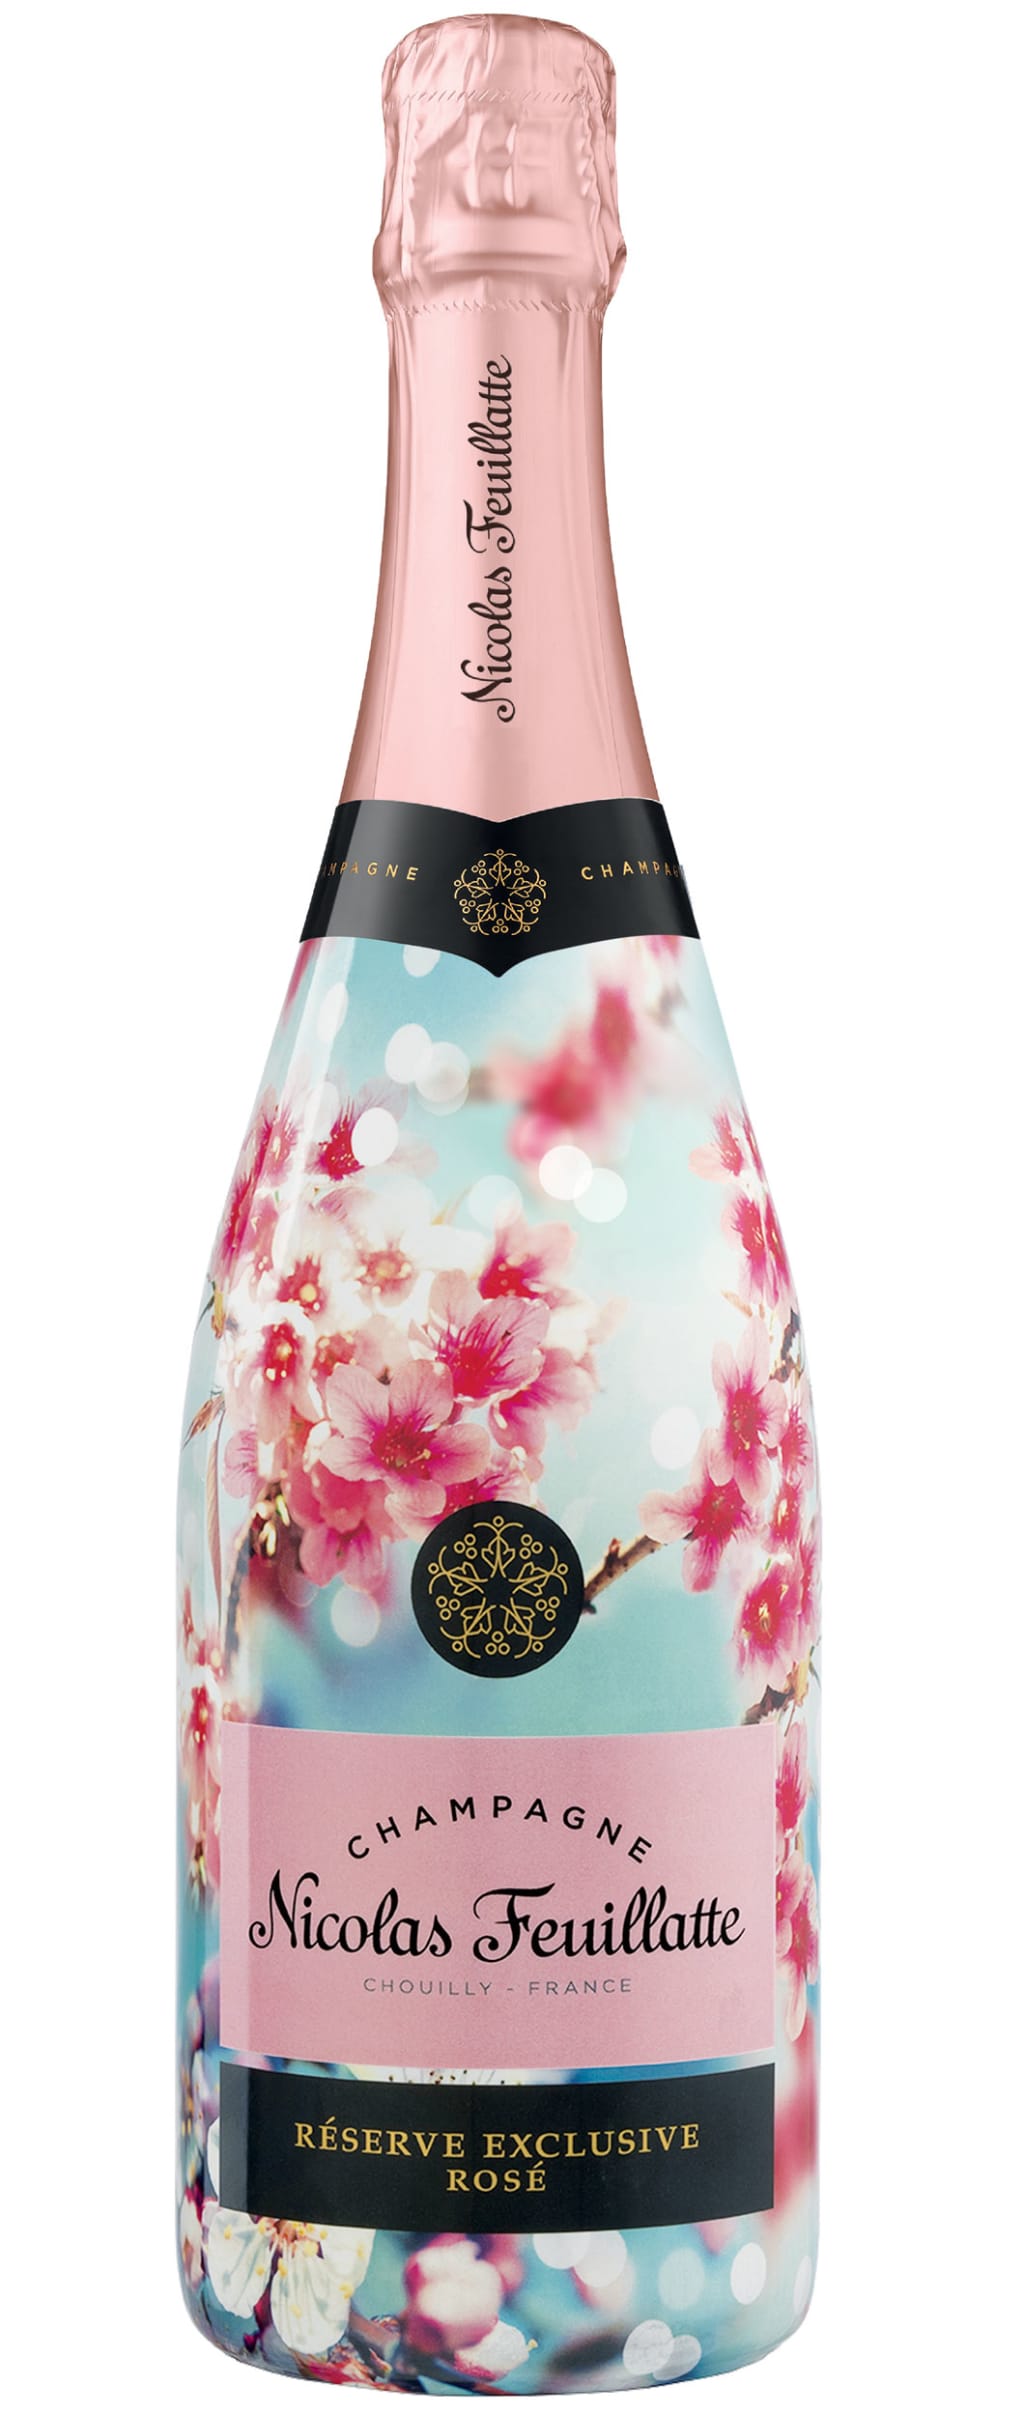 Réserve Exclusive Rosé - Champagne Nicolas Feuillatte